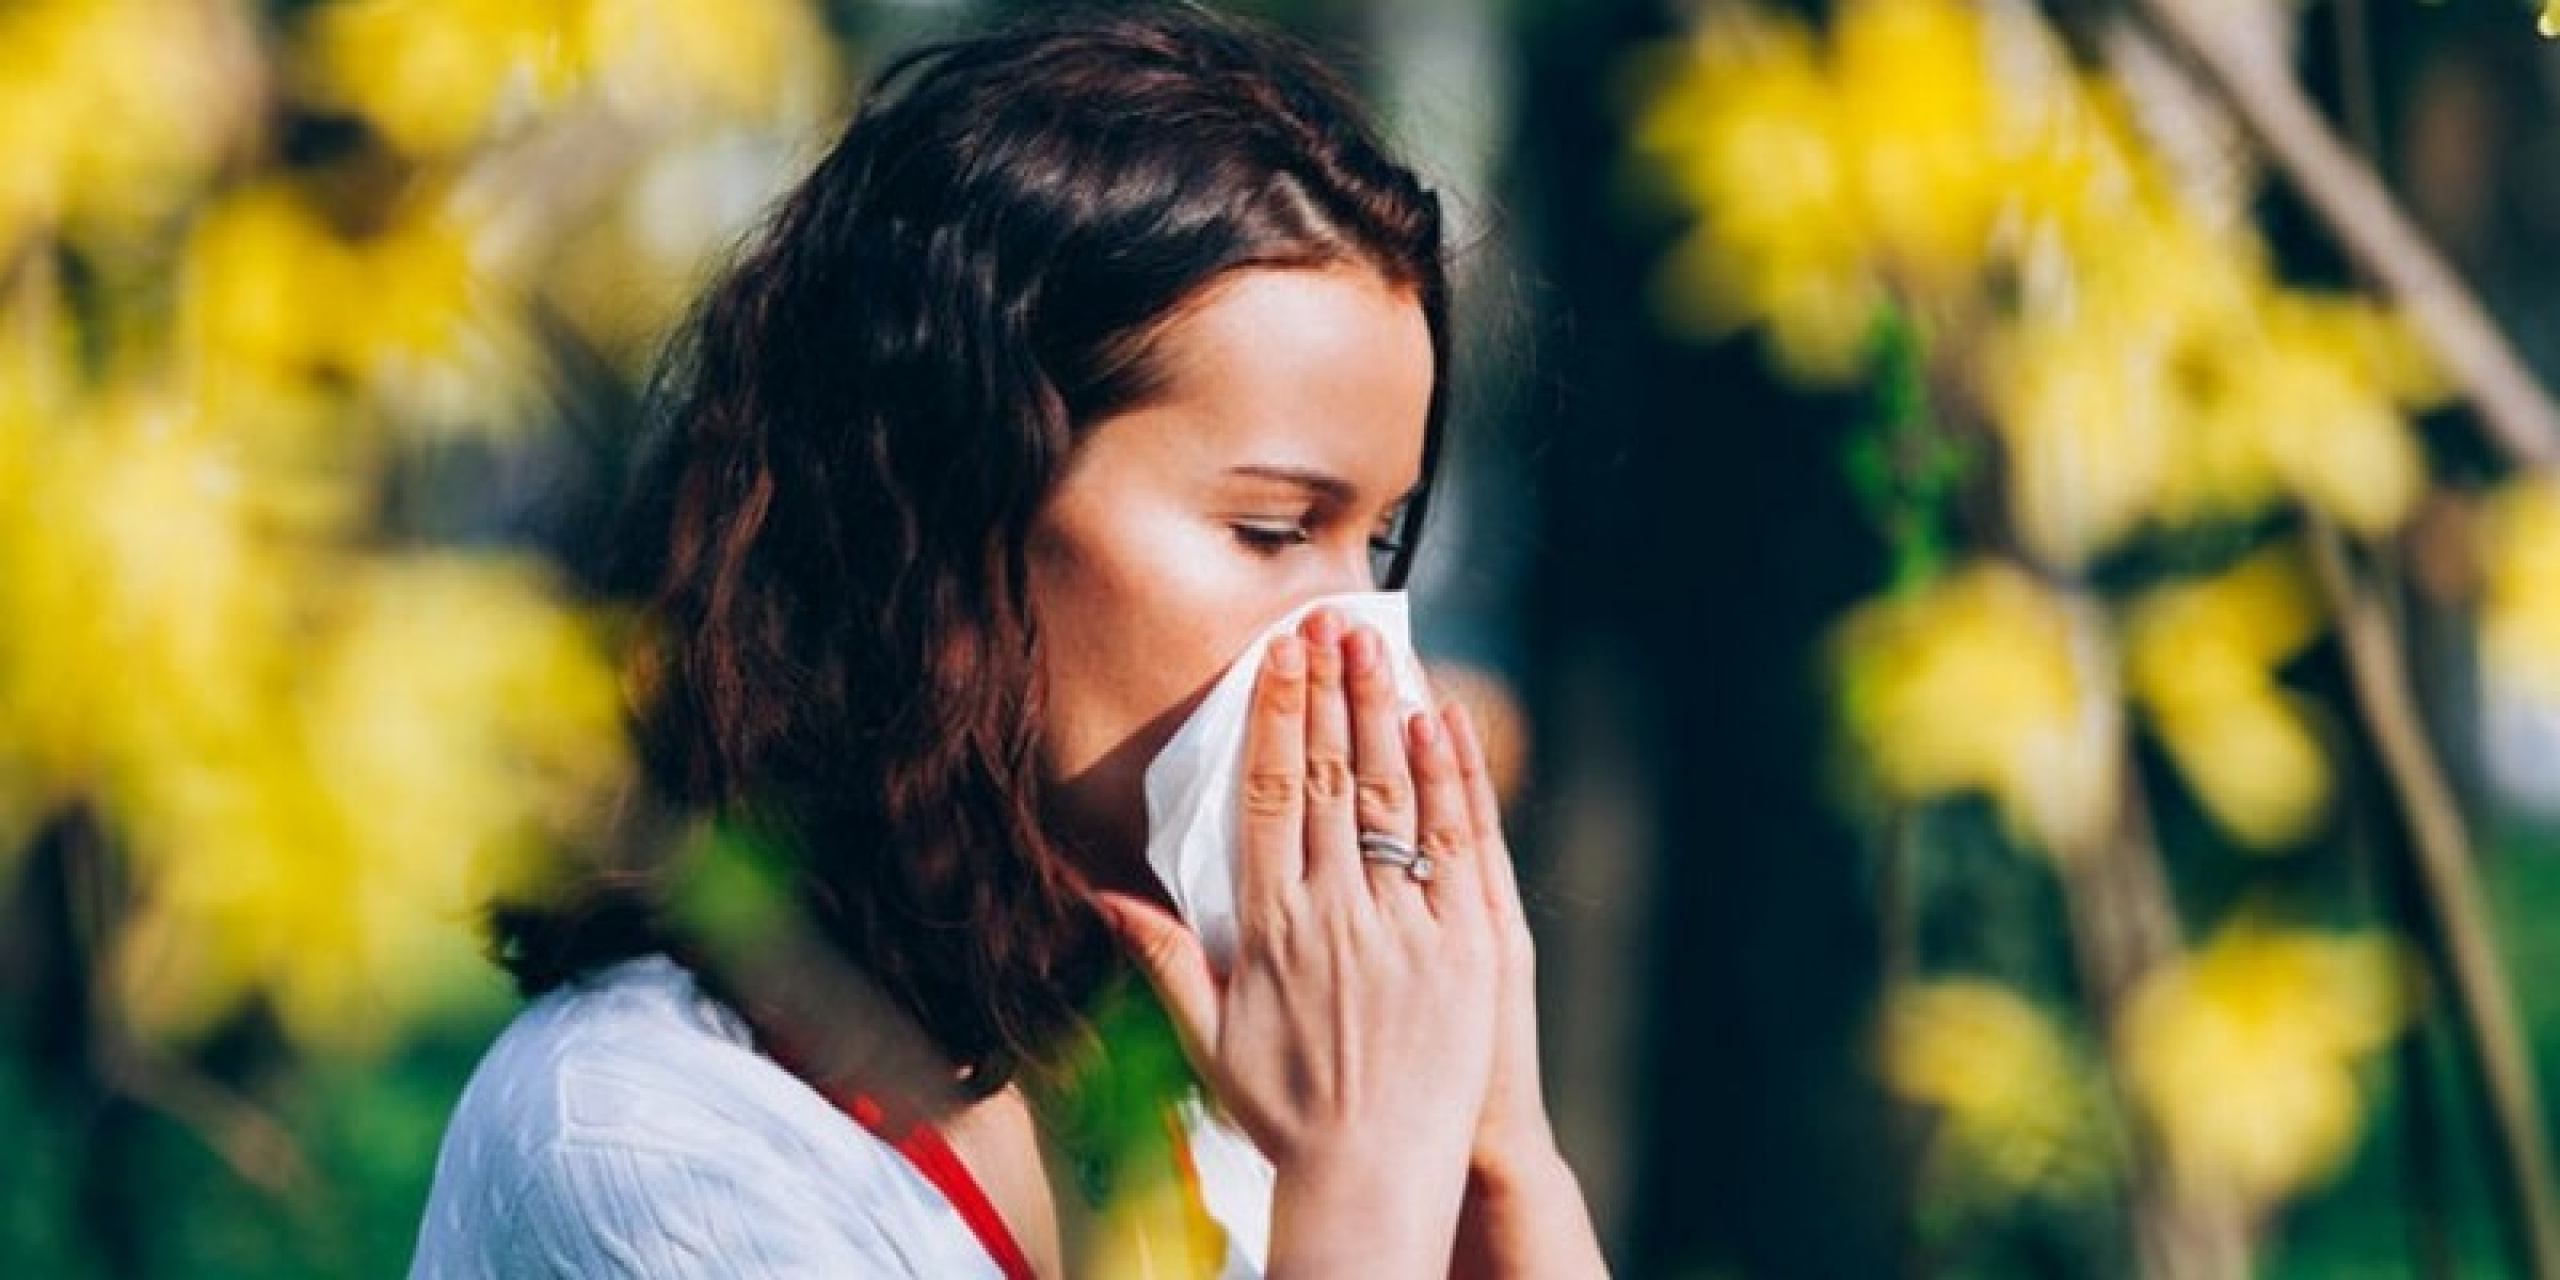 АСИТ – шанс избавиться от аллергии